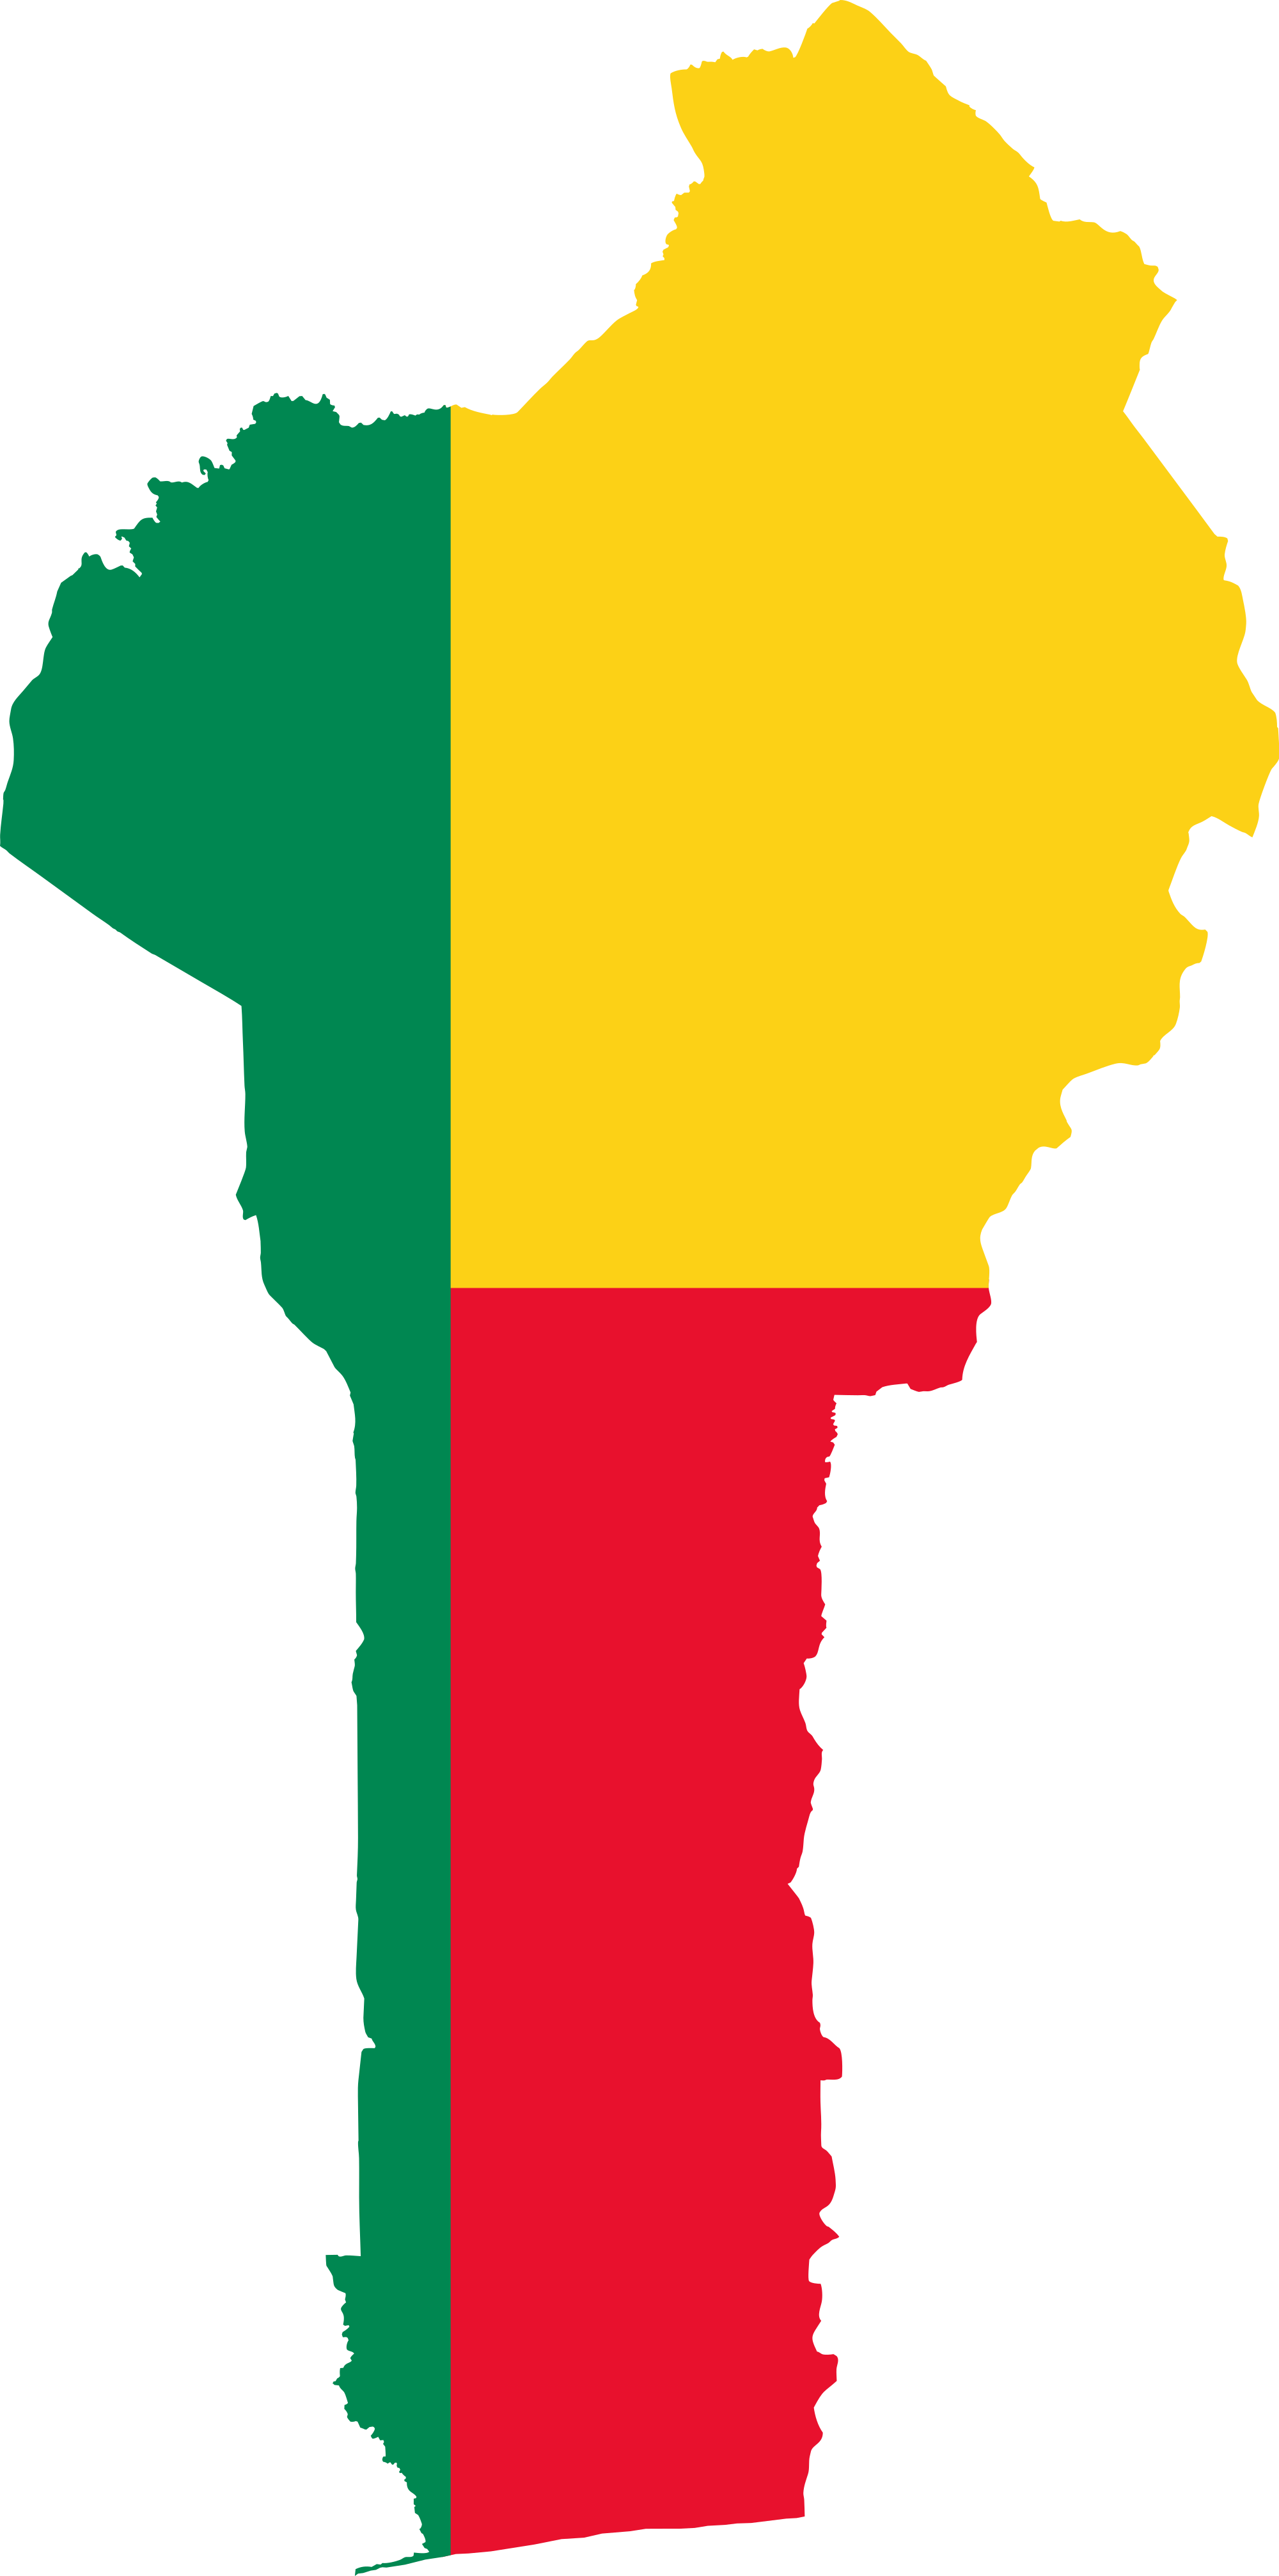 Benin Flag PNG Image Background